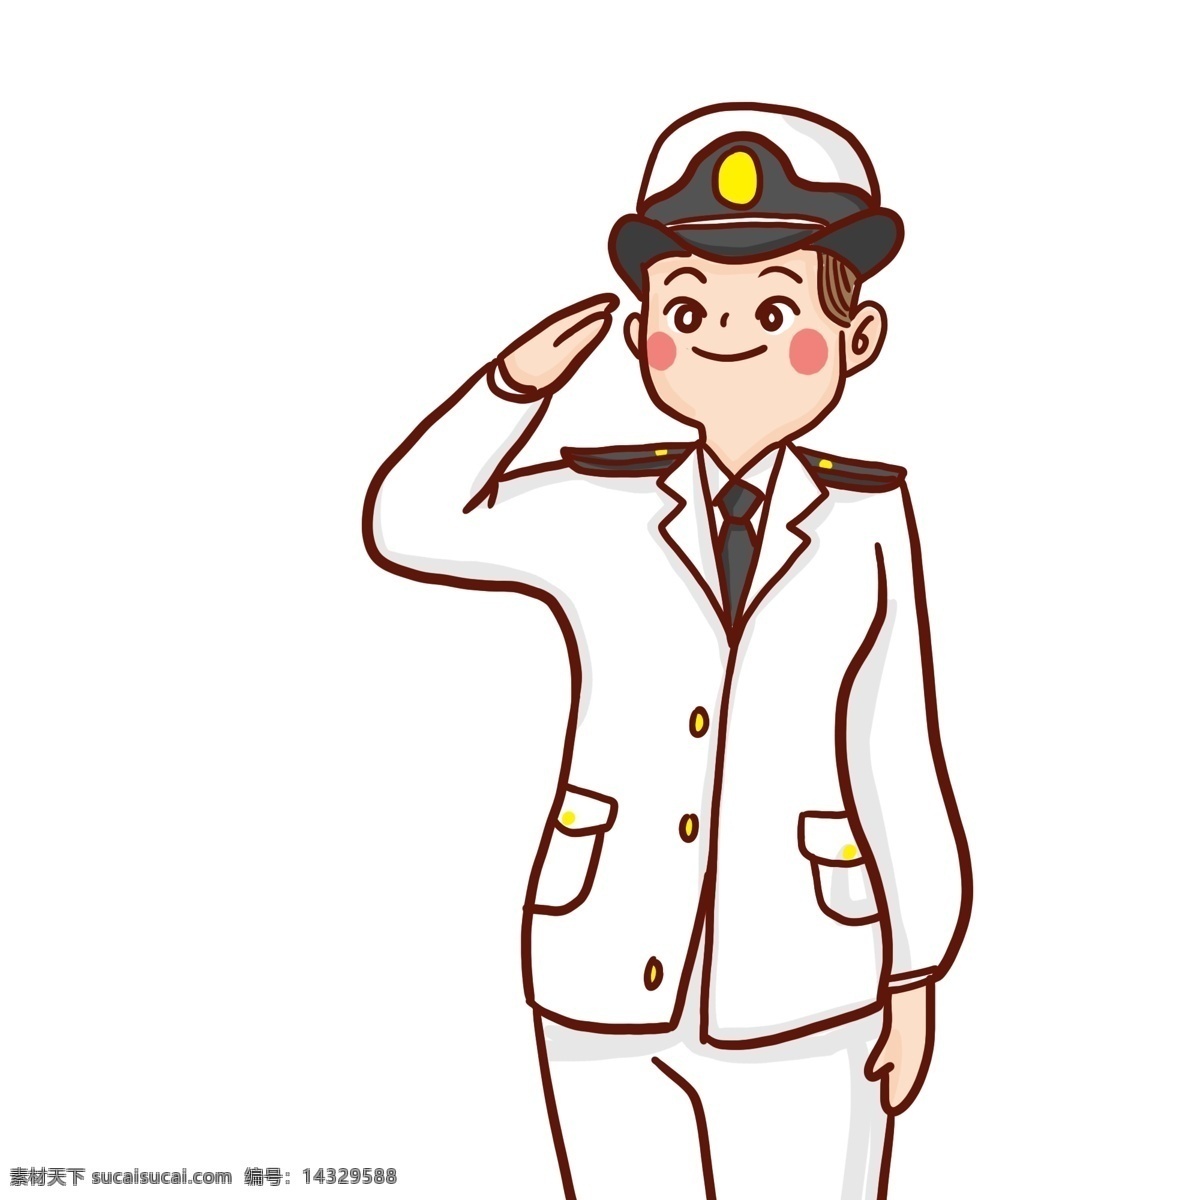 卡通 手绘 敬礼 海军 人物 插画 漫画 军警 人物素材 可爱 少年